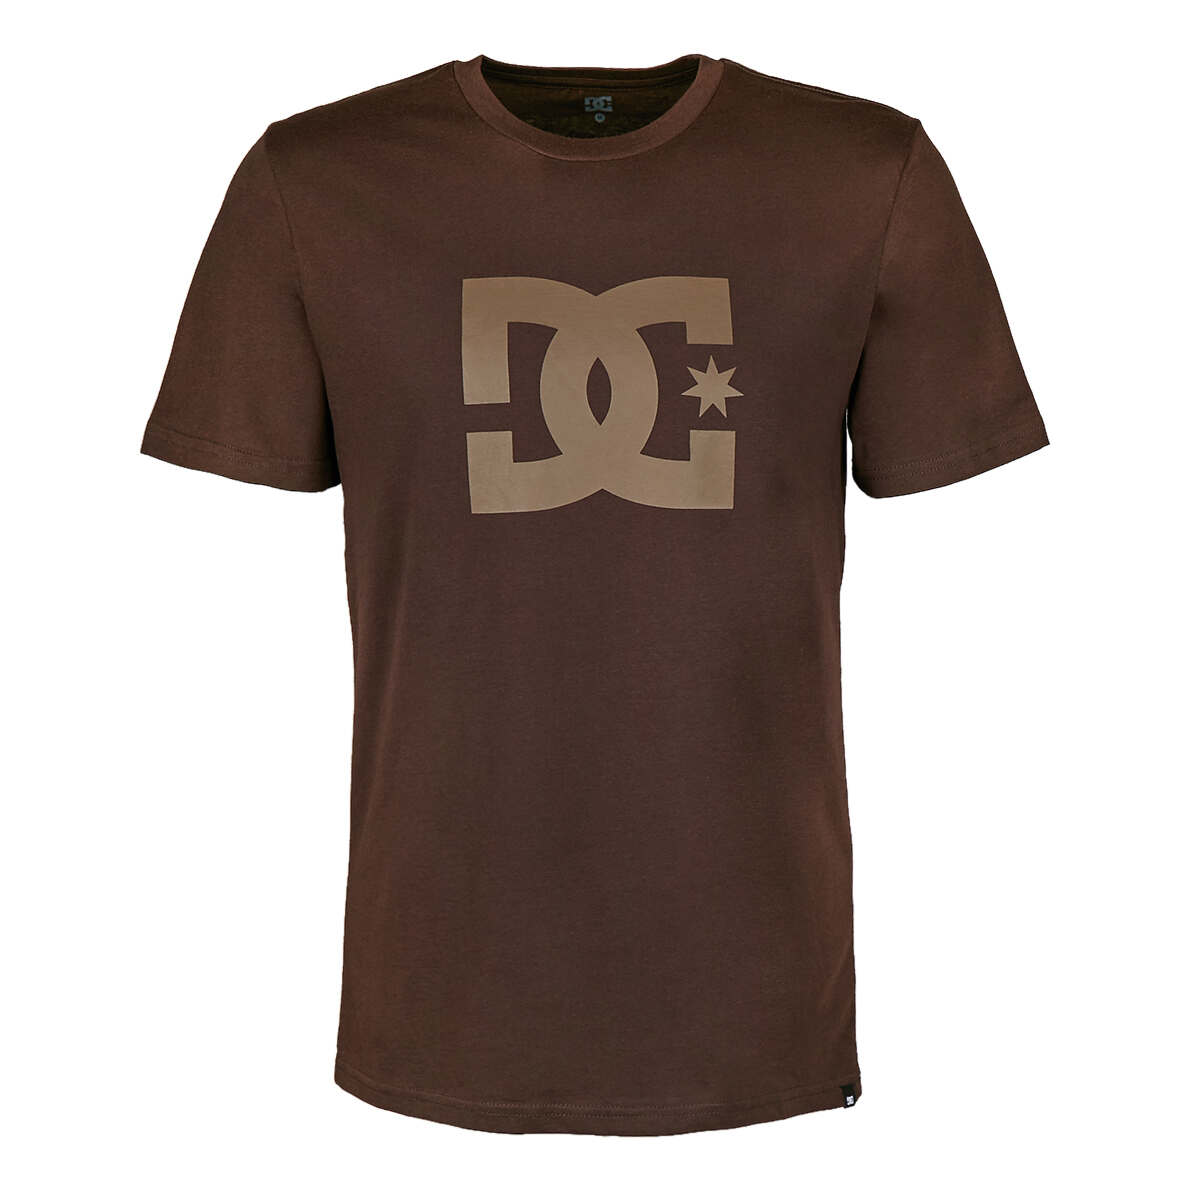 DC T-Shirt Star Coffee Bean